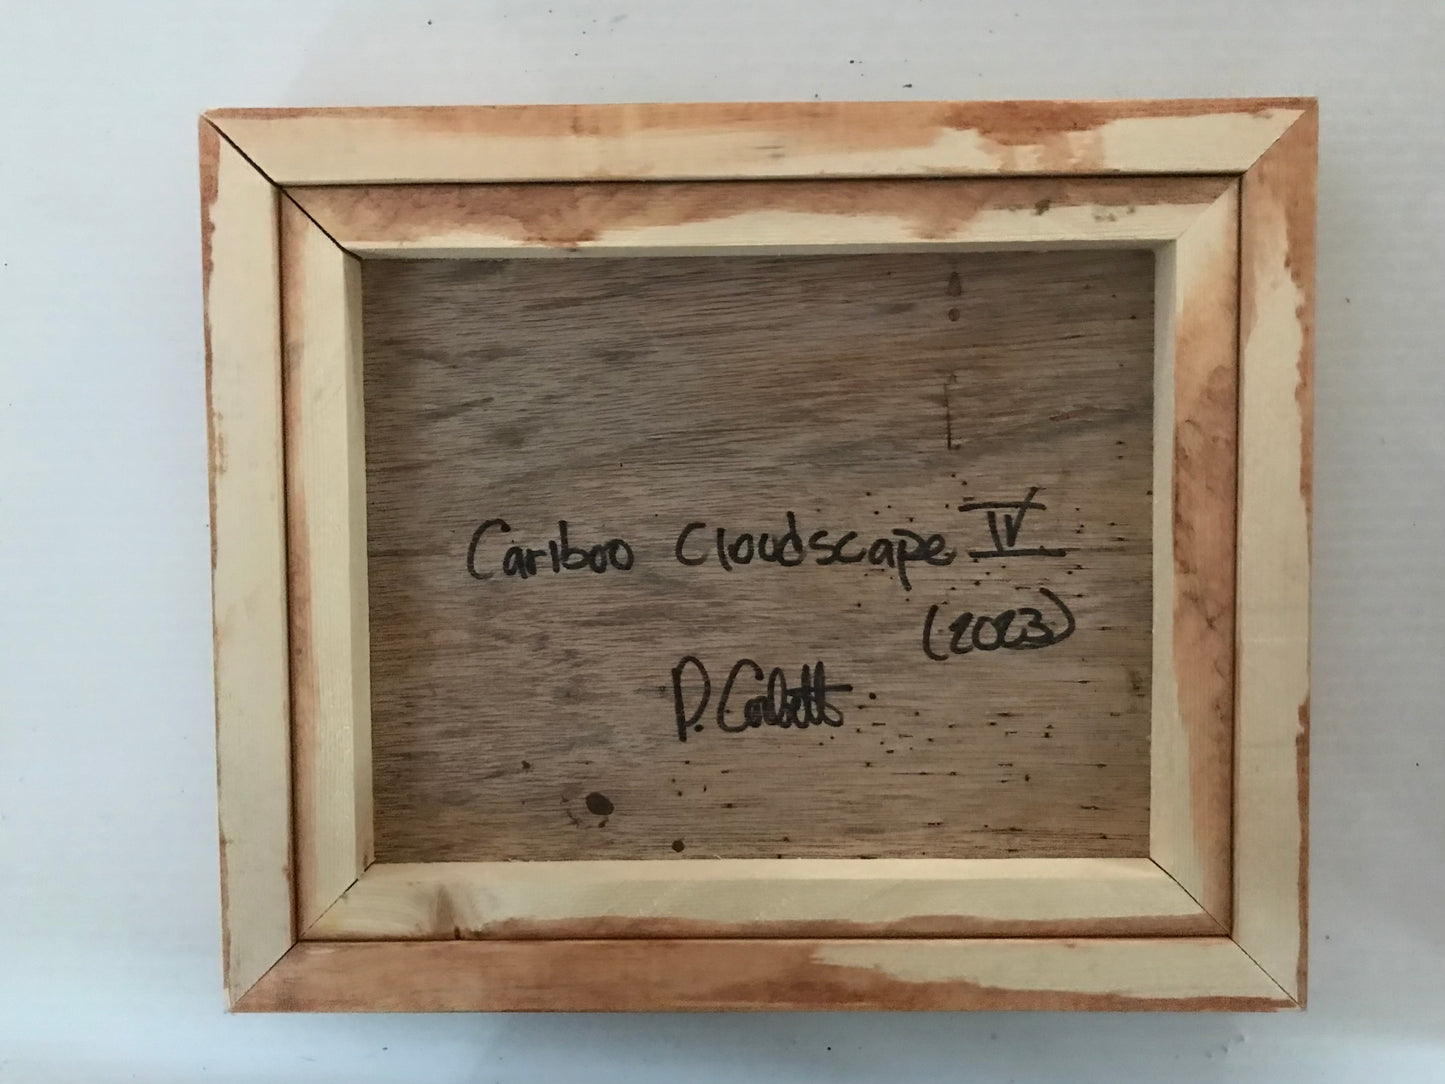 Cariboo Cloudscape IV